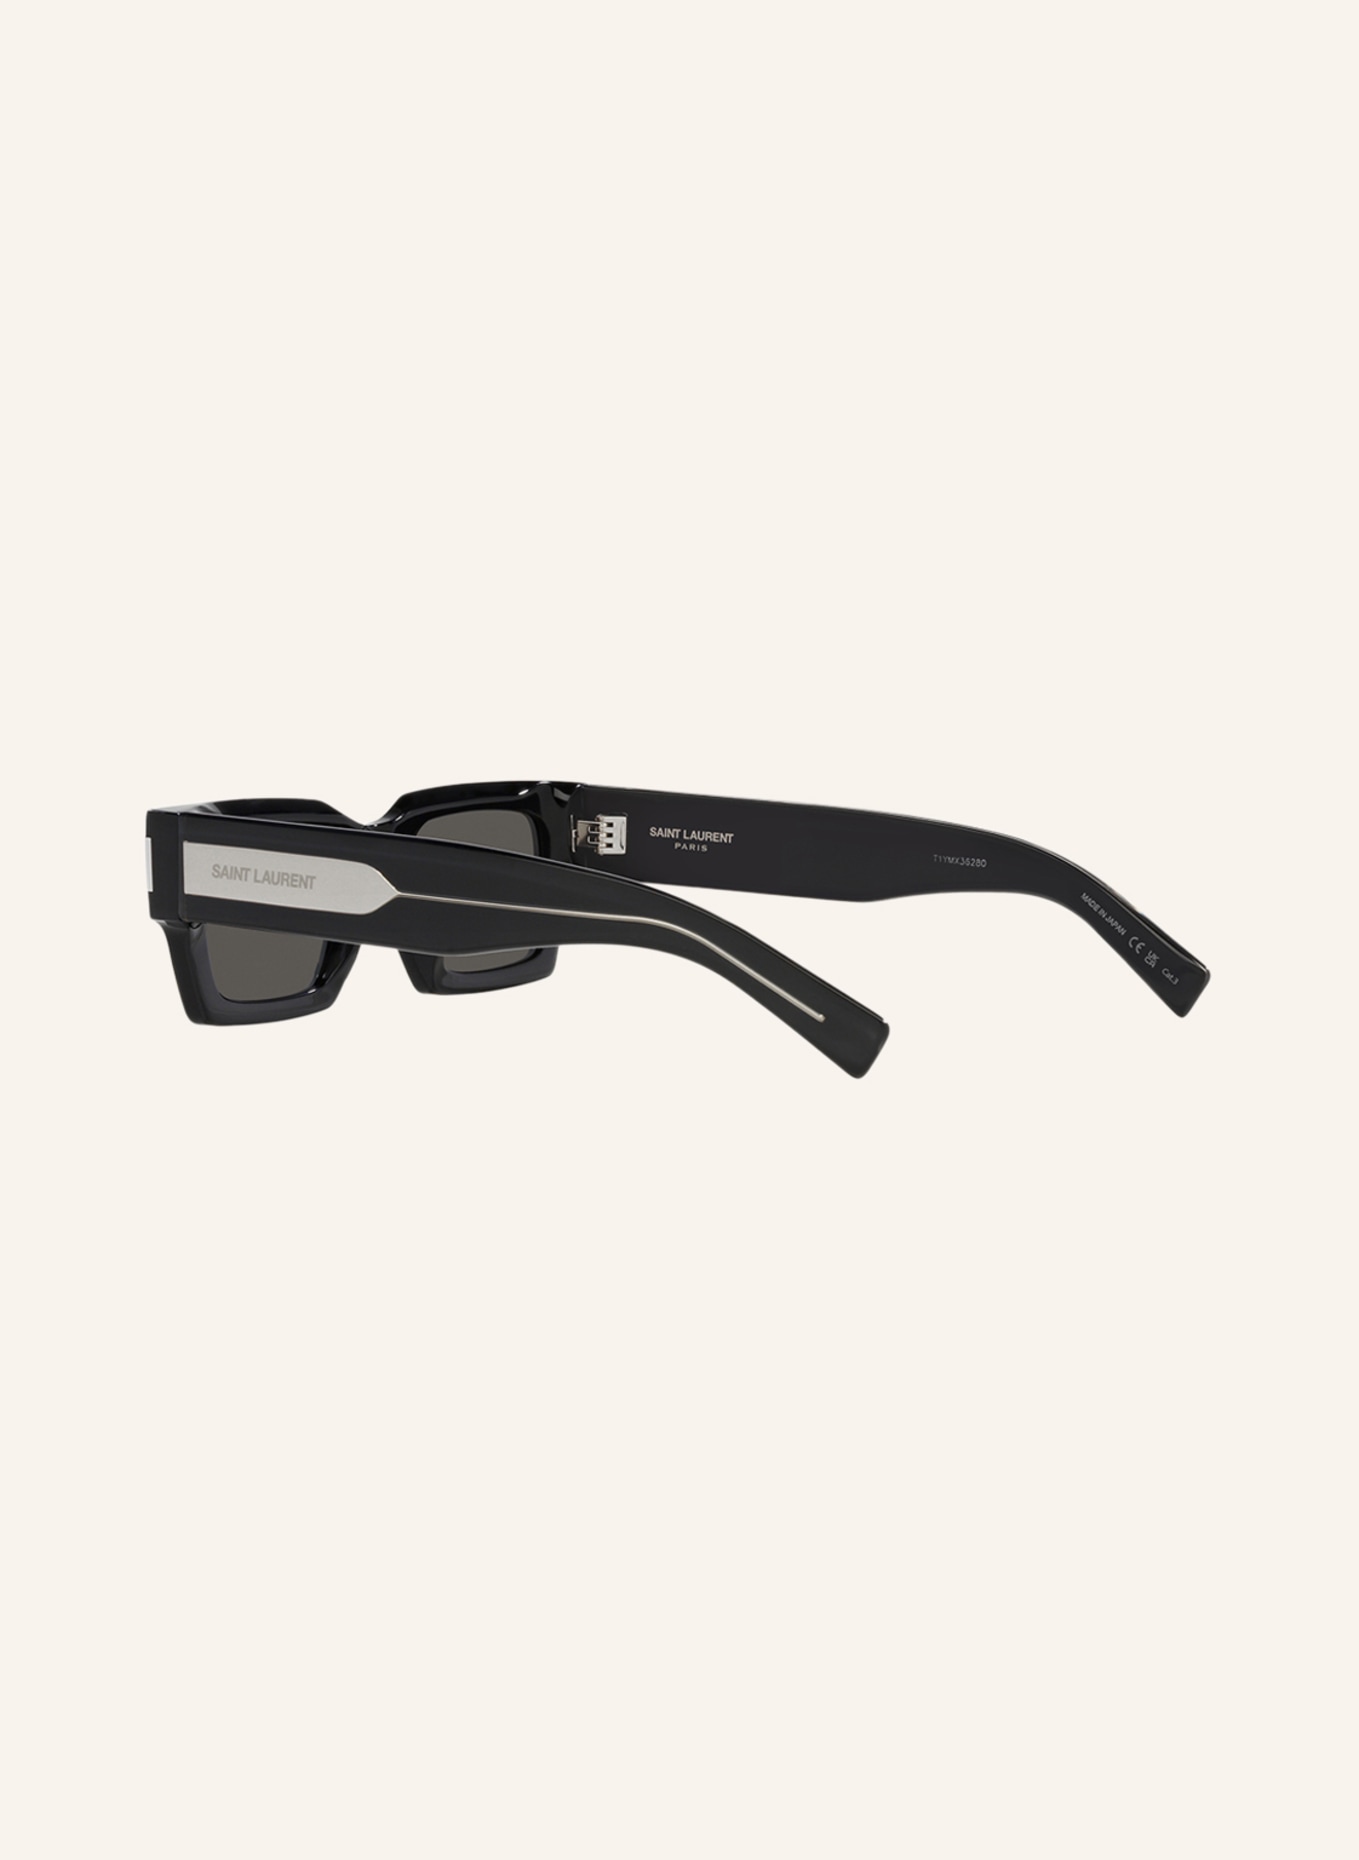 SAINT LAURENT Sunglasses SL572, Color: 1100L1 - BLACK/ GRAY (Image 4)